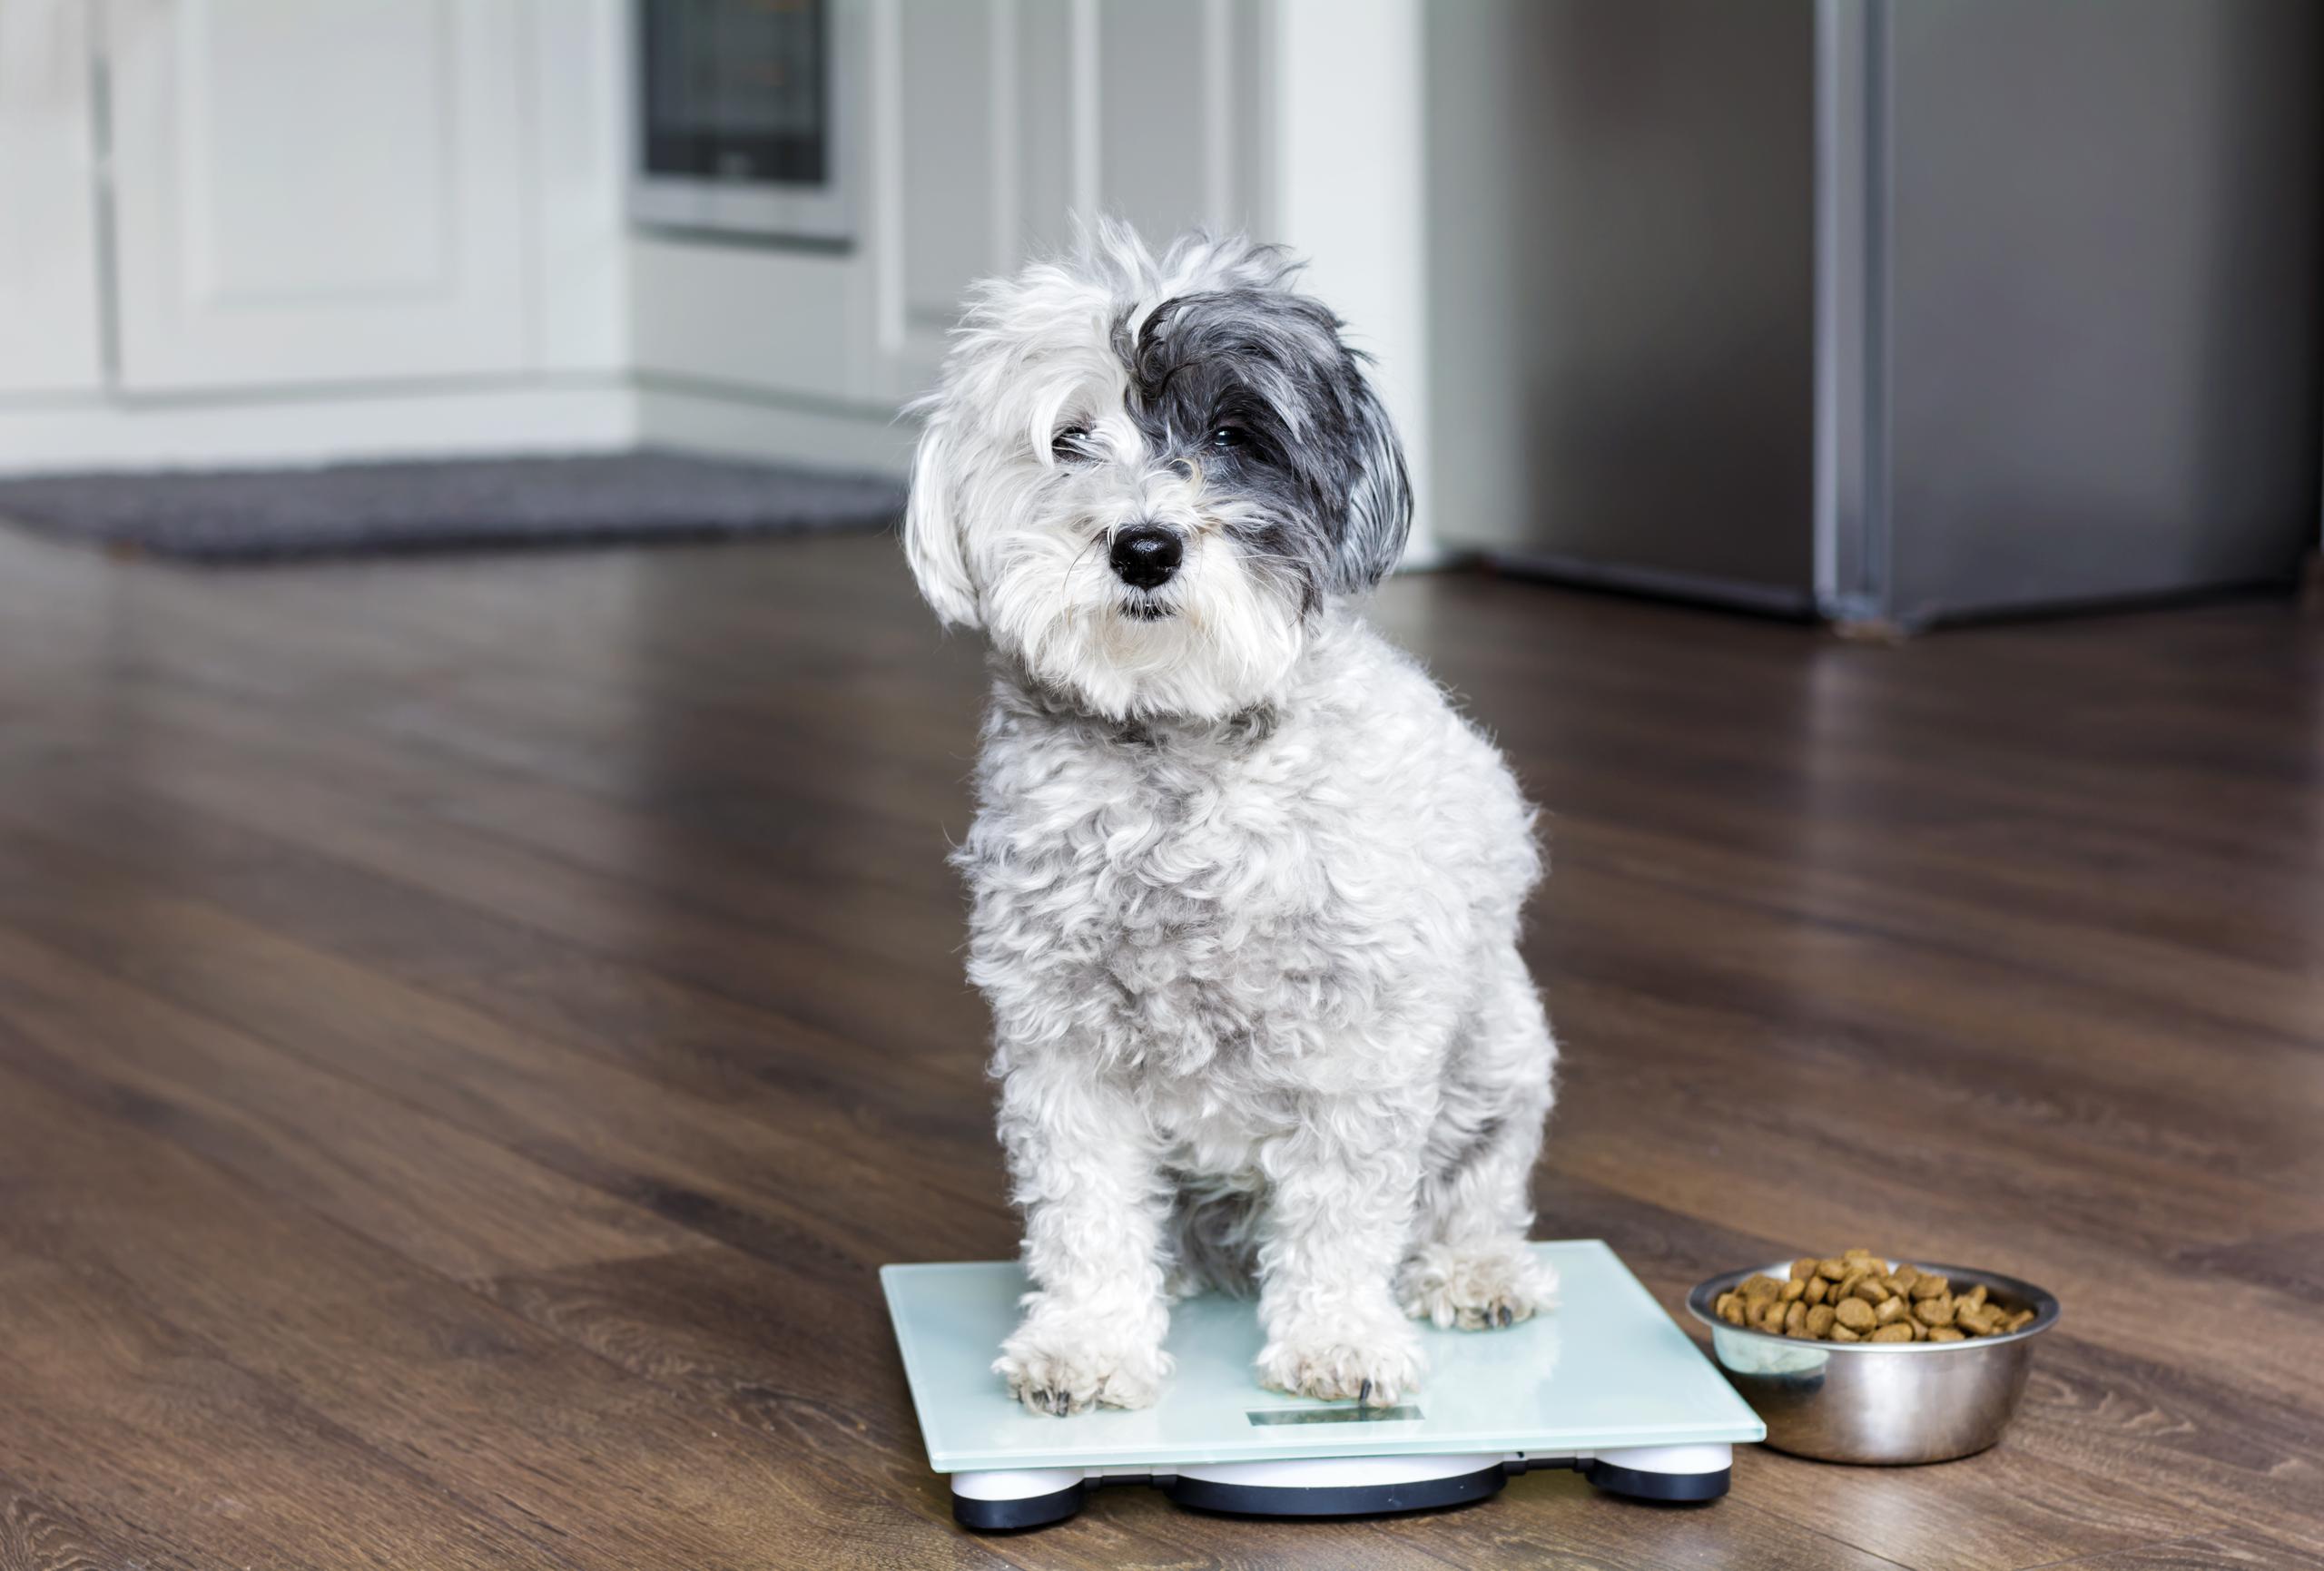 Los profesionales en el cuido de mascotas recomiendan dividir el alimento y buscar la manera de mantenerlos activos durante el encierro.